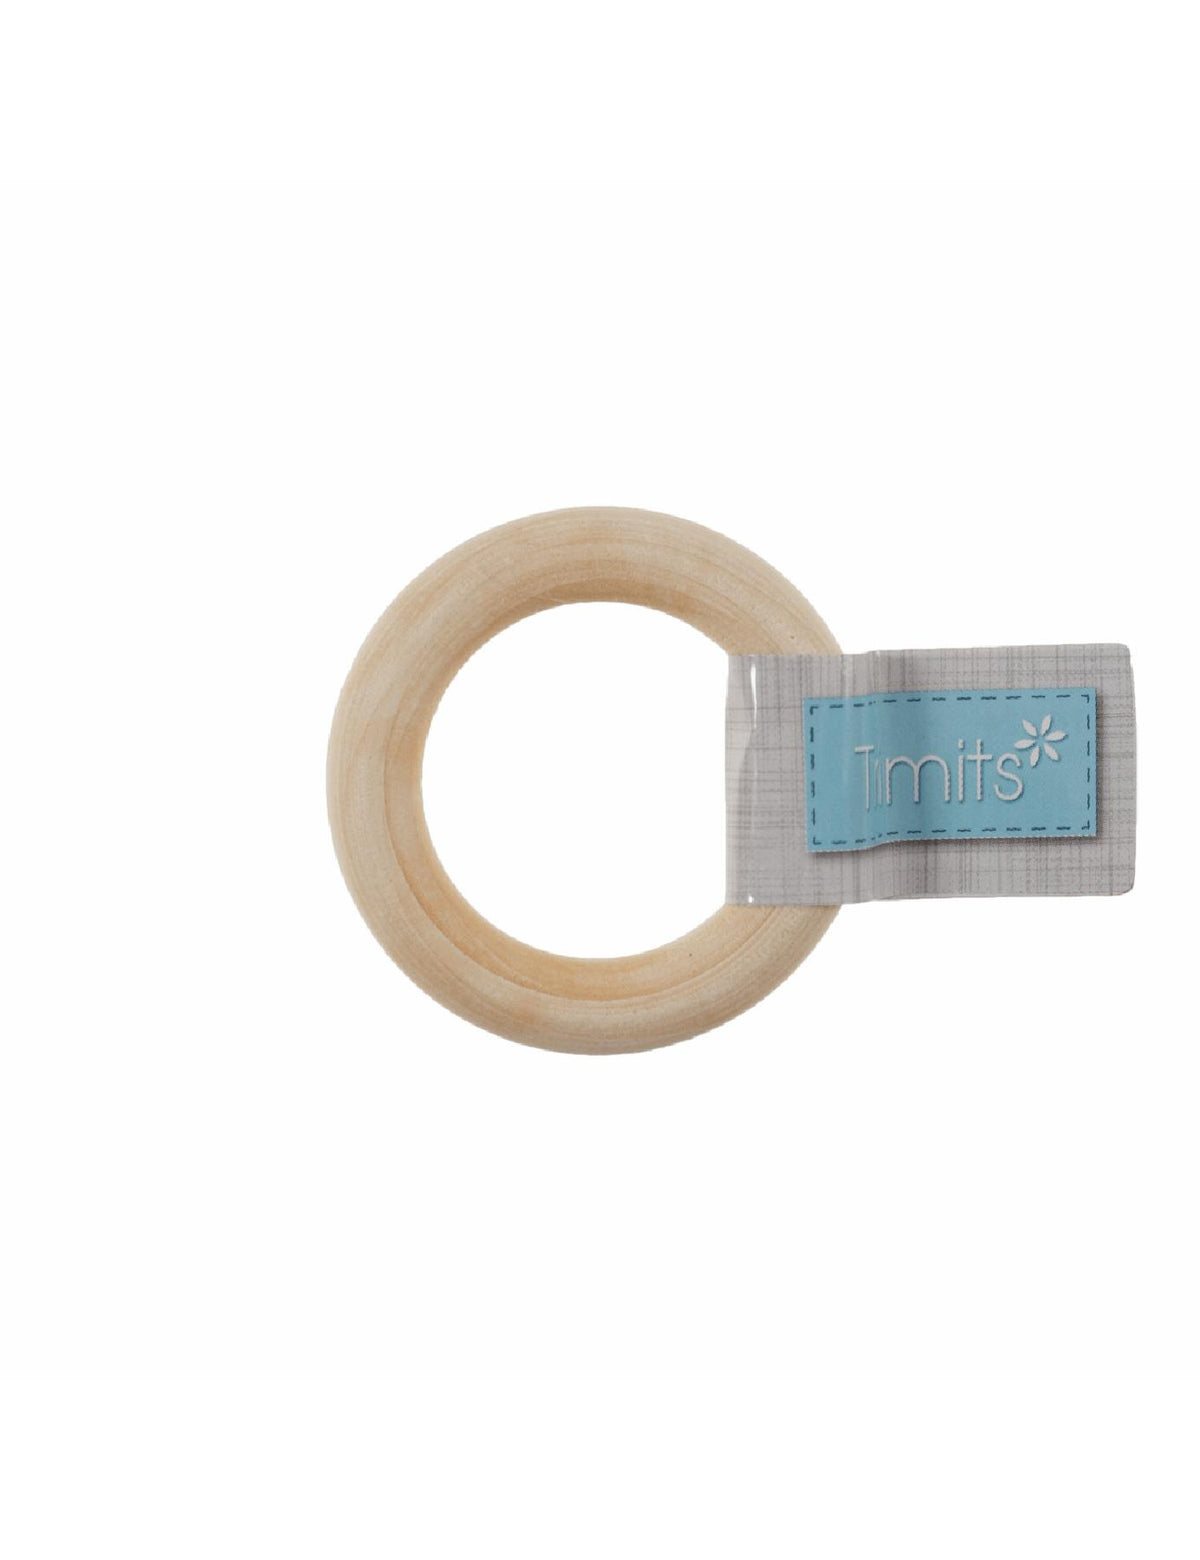 Trimits Birch Craft Ring (TRH24) round macrame hanger - 4.5cm